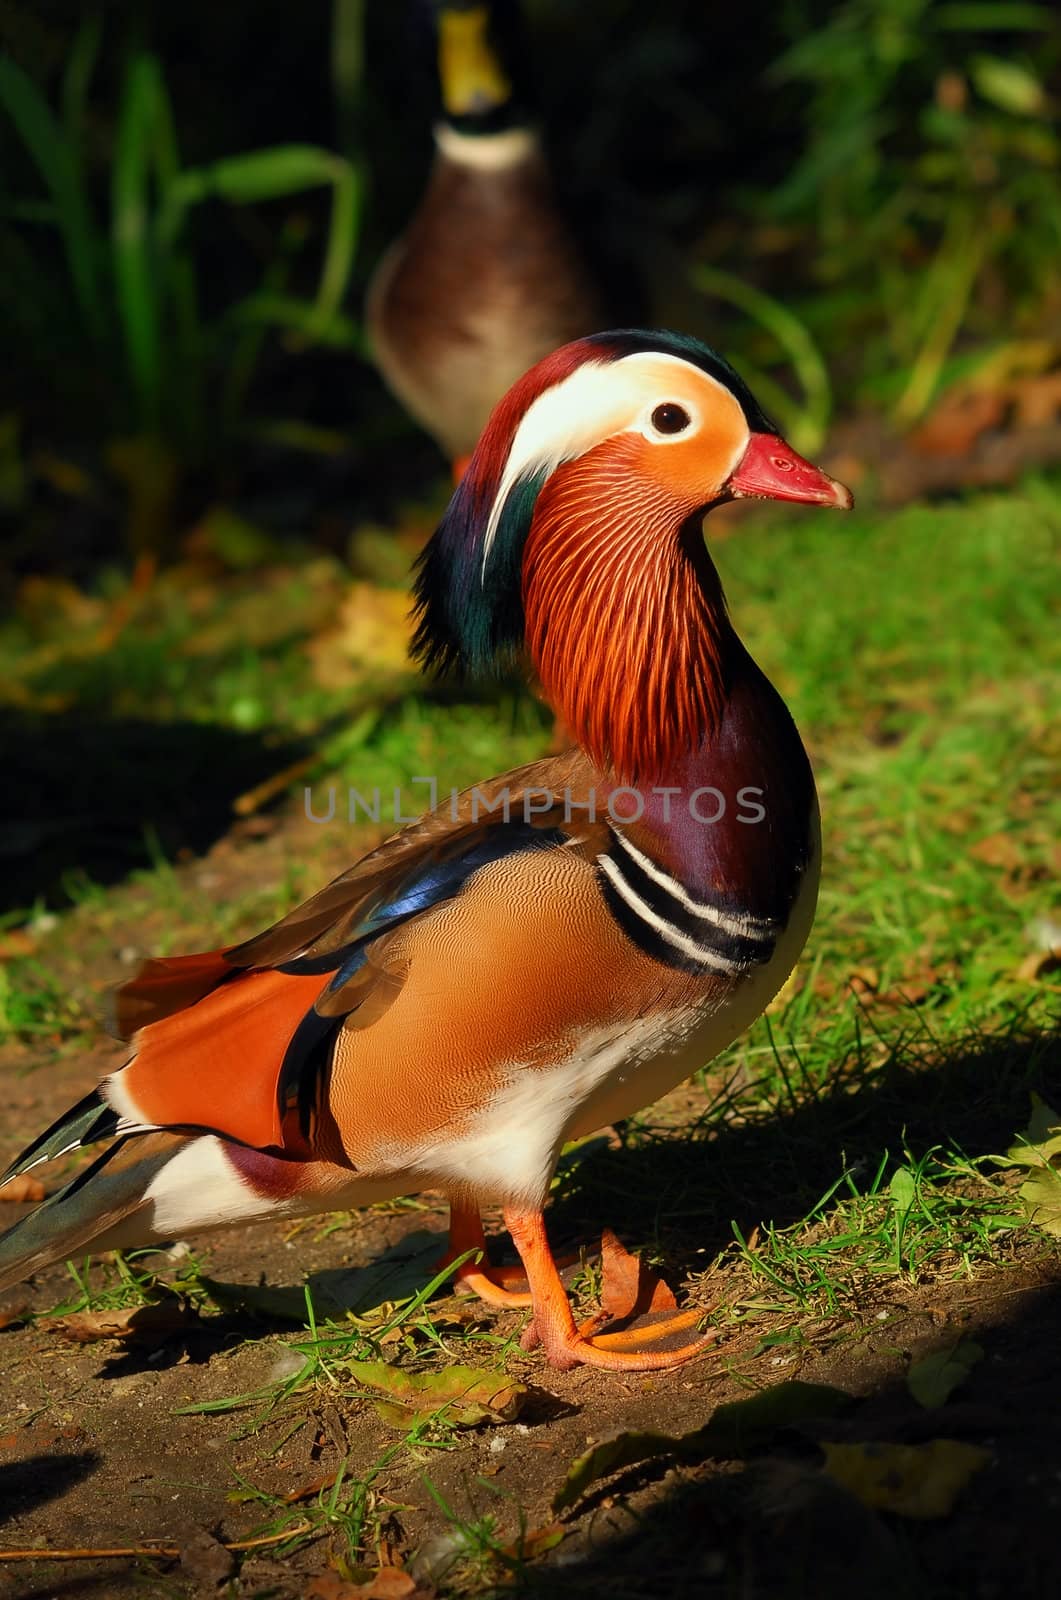 Mandarin duck by Vectorex